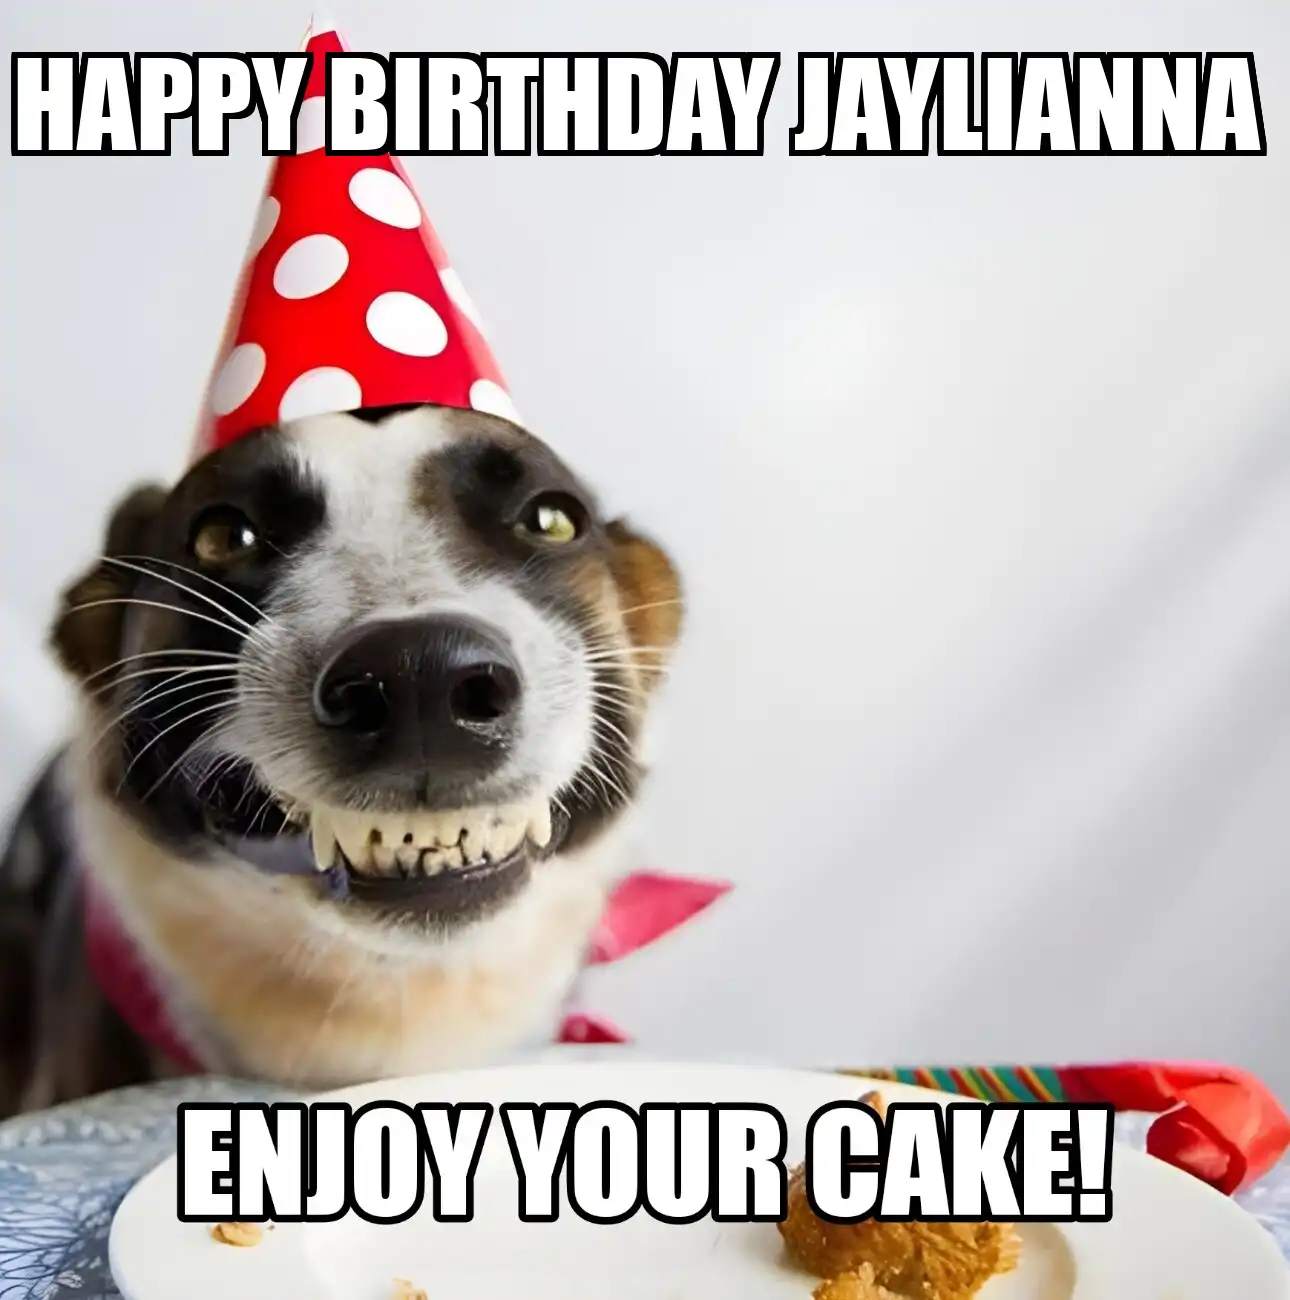 Happy Birthday Jaylianna Enjoy Your Cake Dog Meme